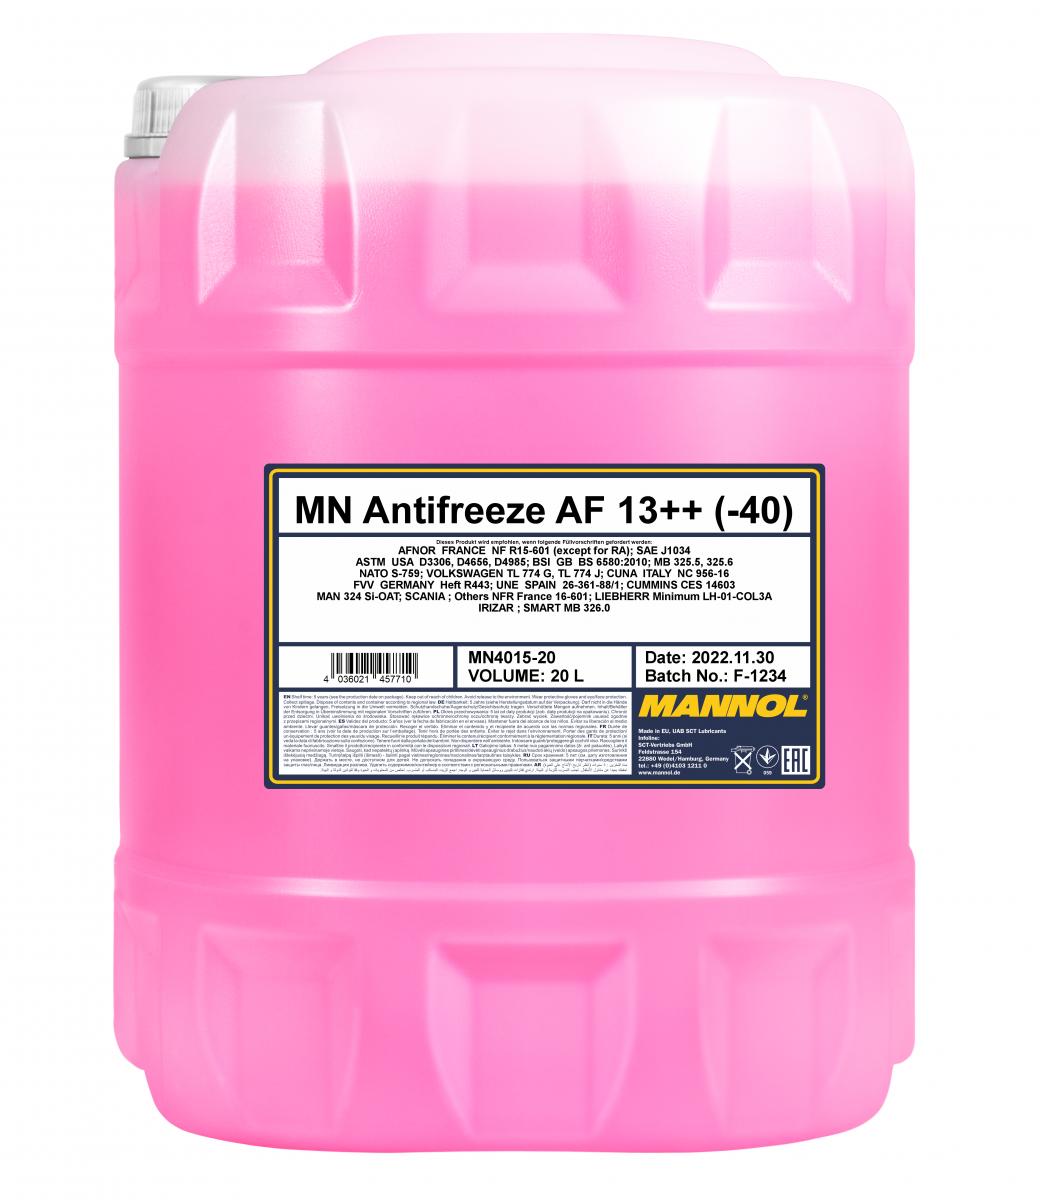 MN Antifreeze AF 13++ (-40)